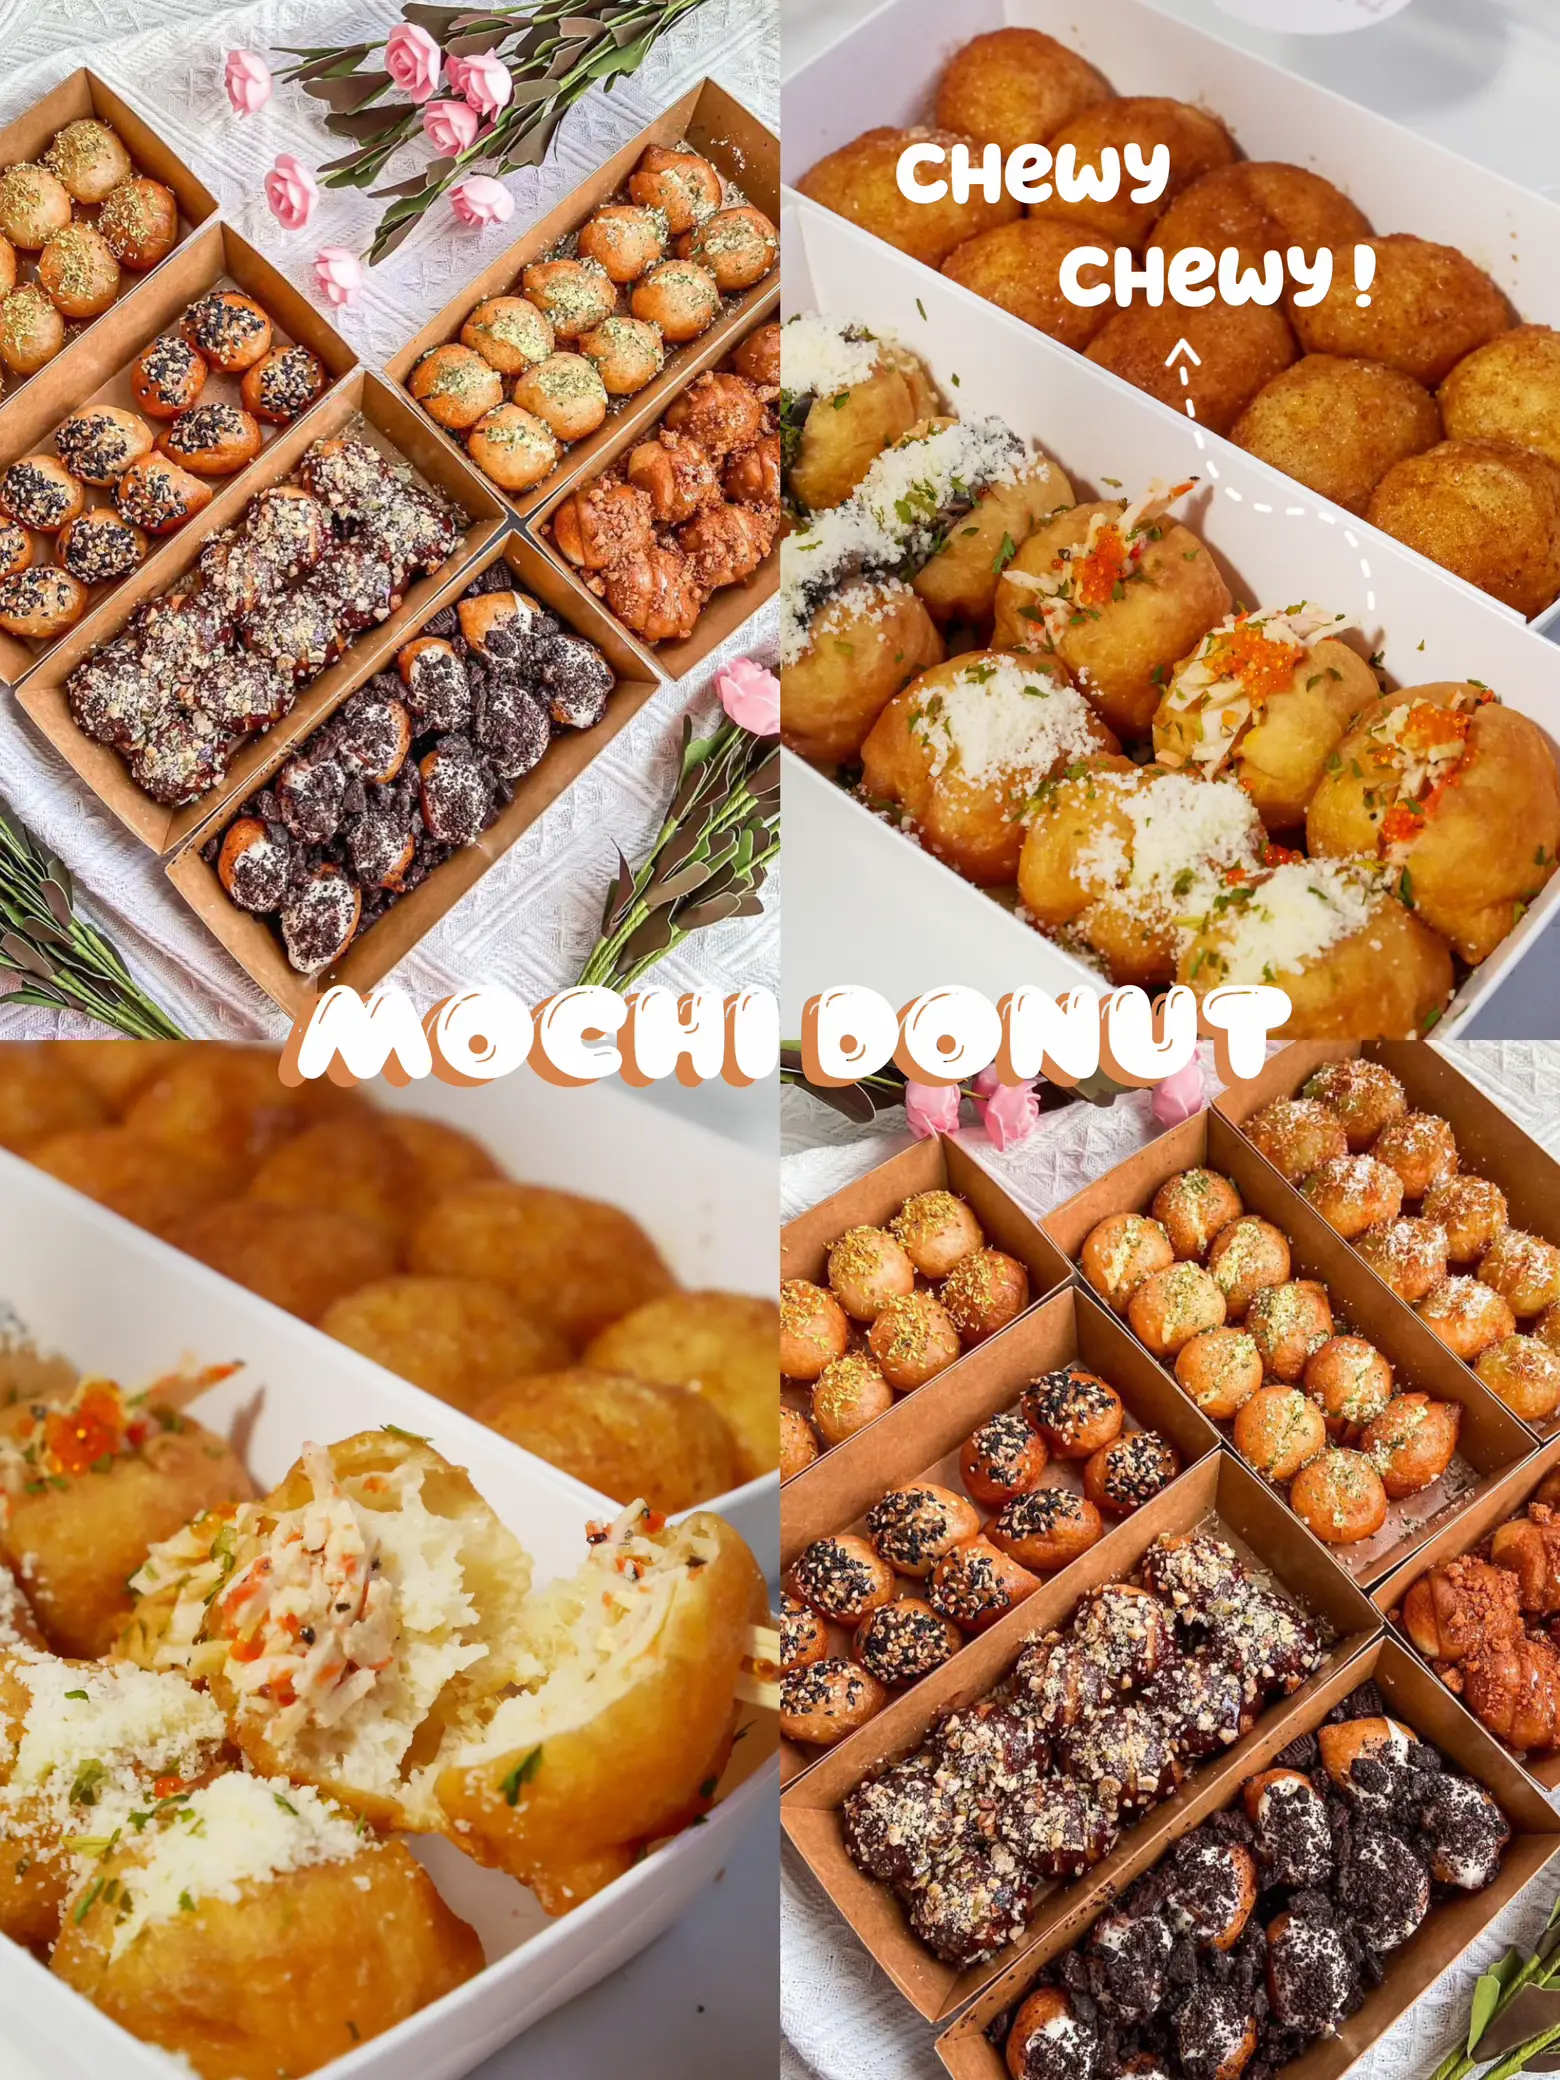 Mochi + donut?? Omg yes pls 🤤🤤's images(0)